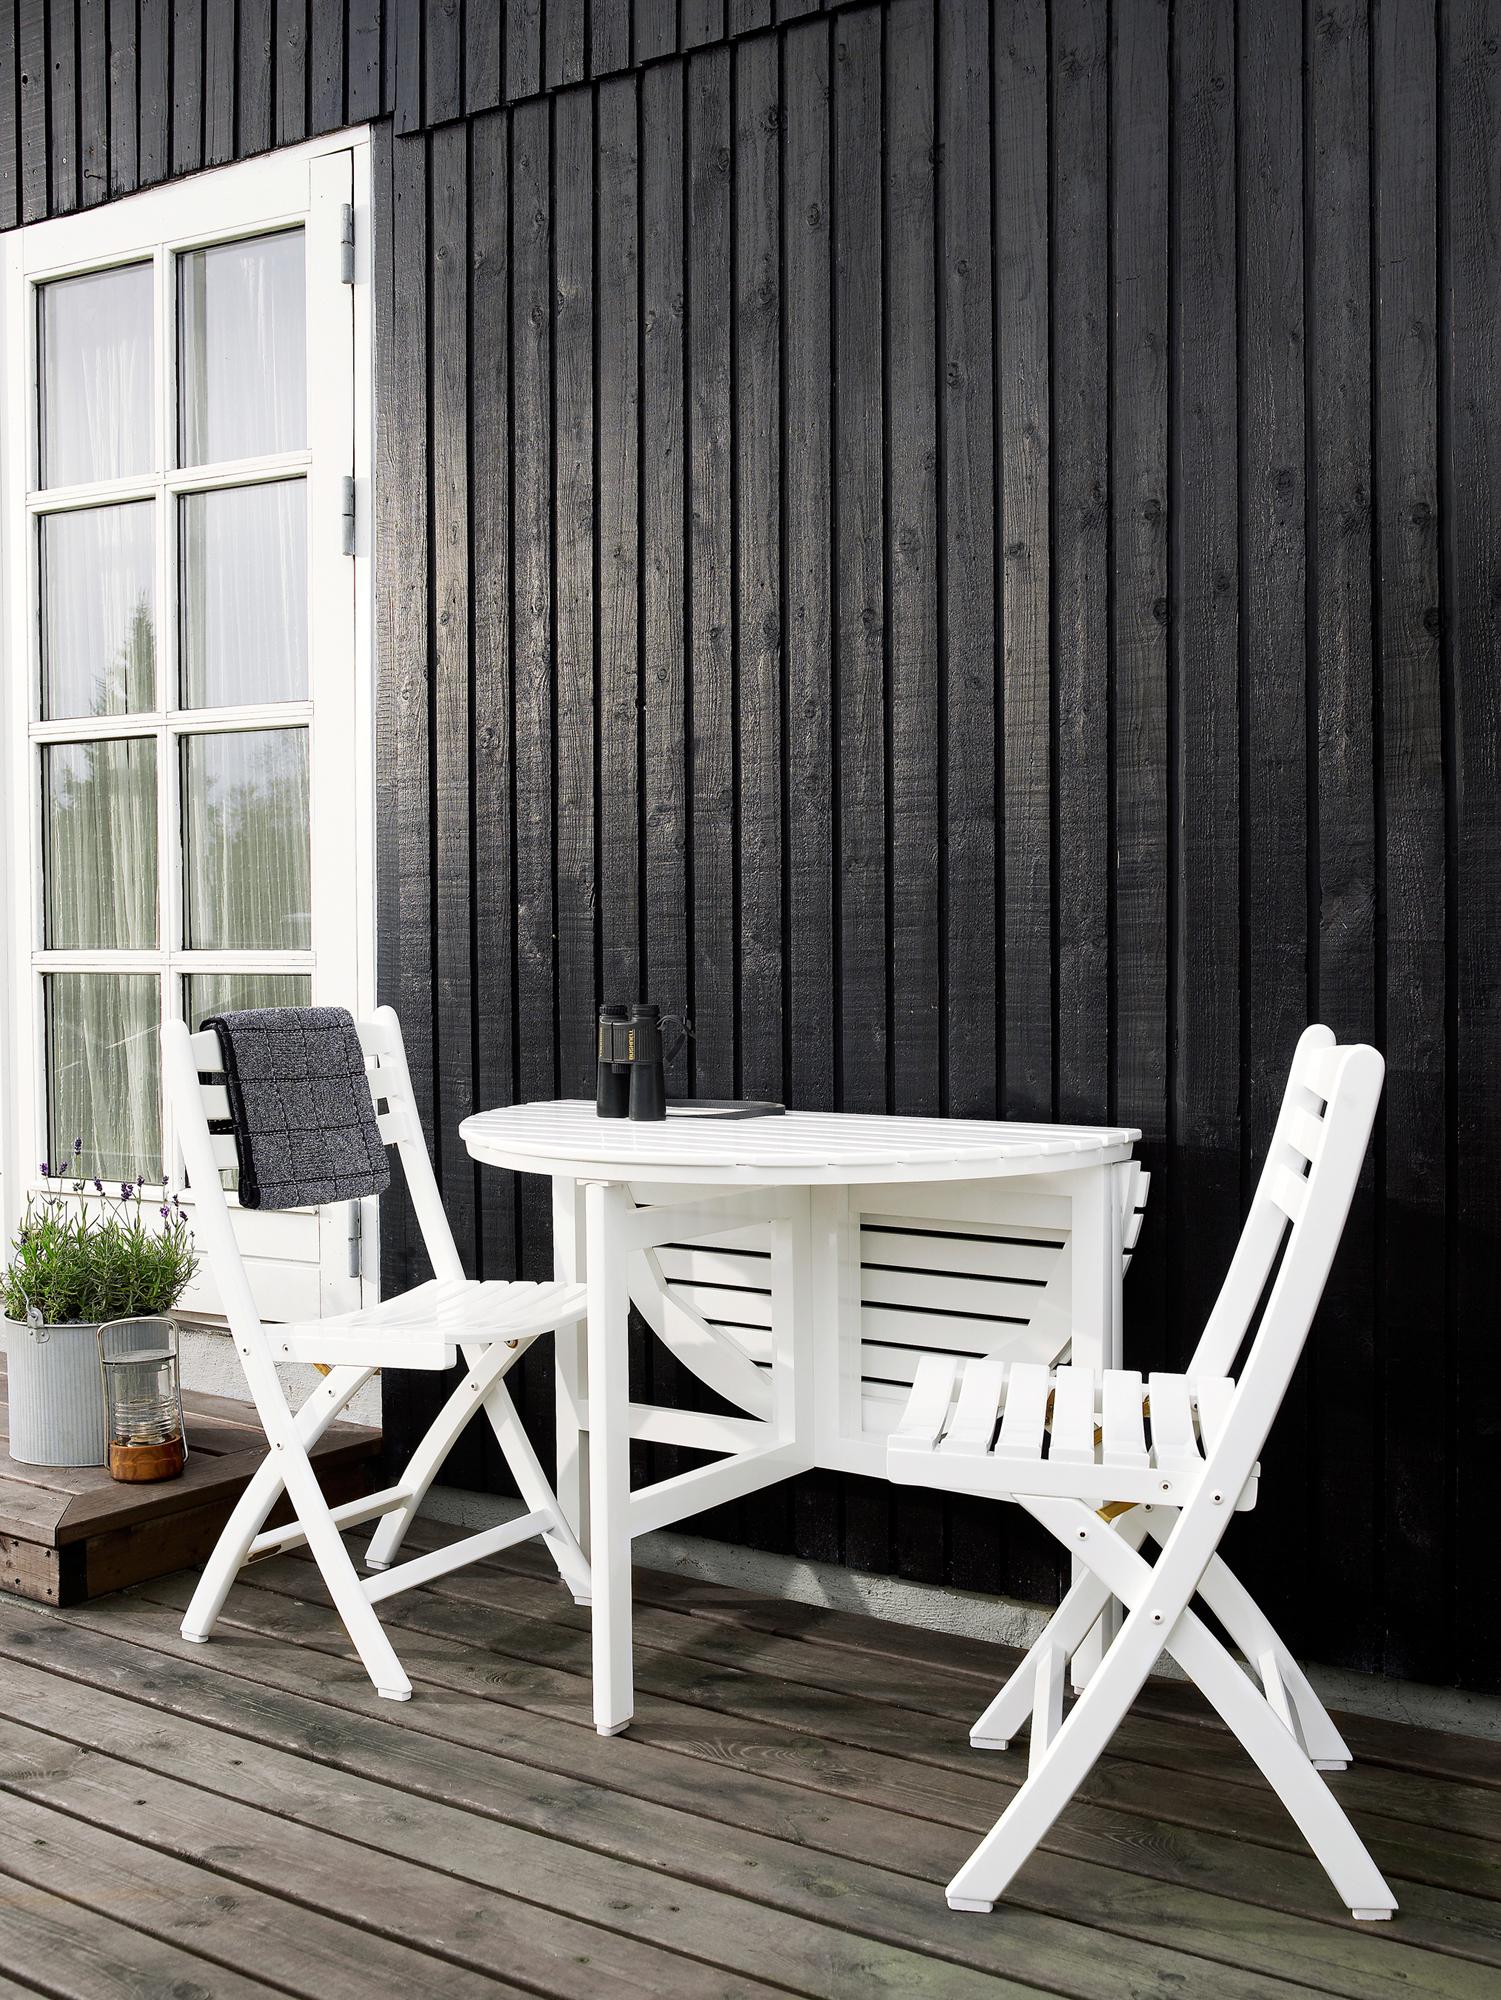 Weiße Gartenmöbel auf der Terasse #terrasse #gartenmöbel #gartentisch #weißesgartenmöbel ©Skagerak